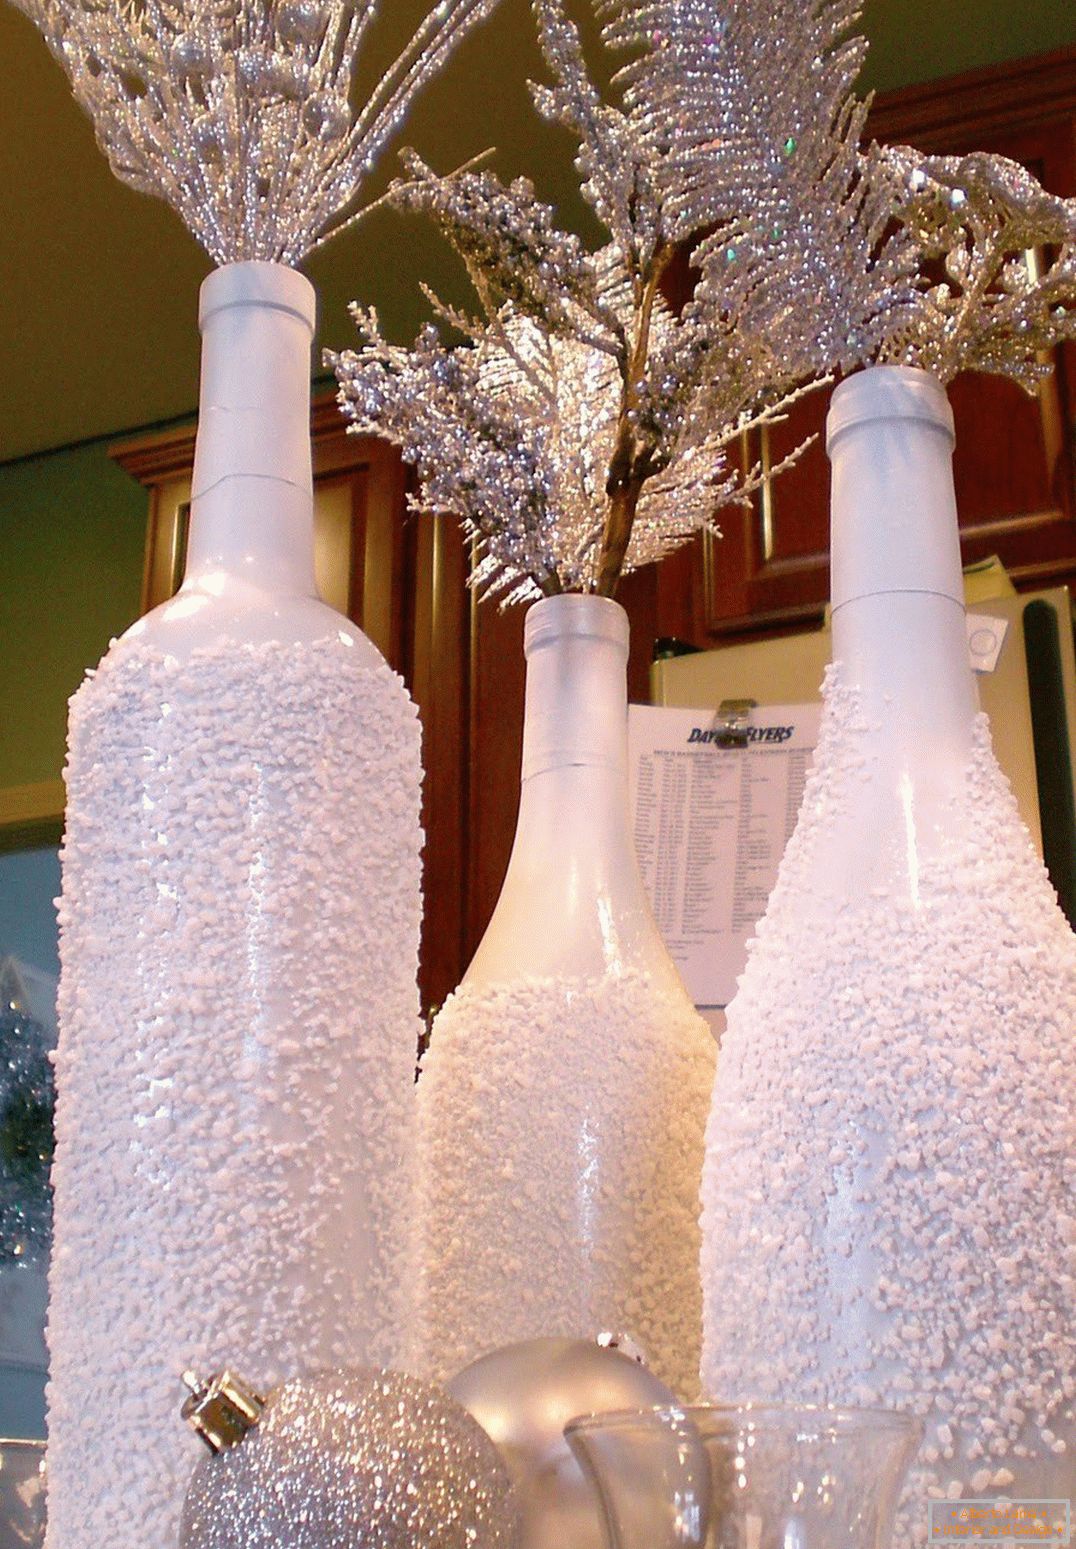 Decoração de Natal de garrafas